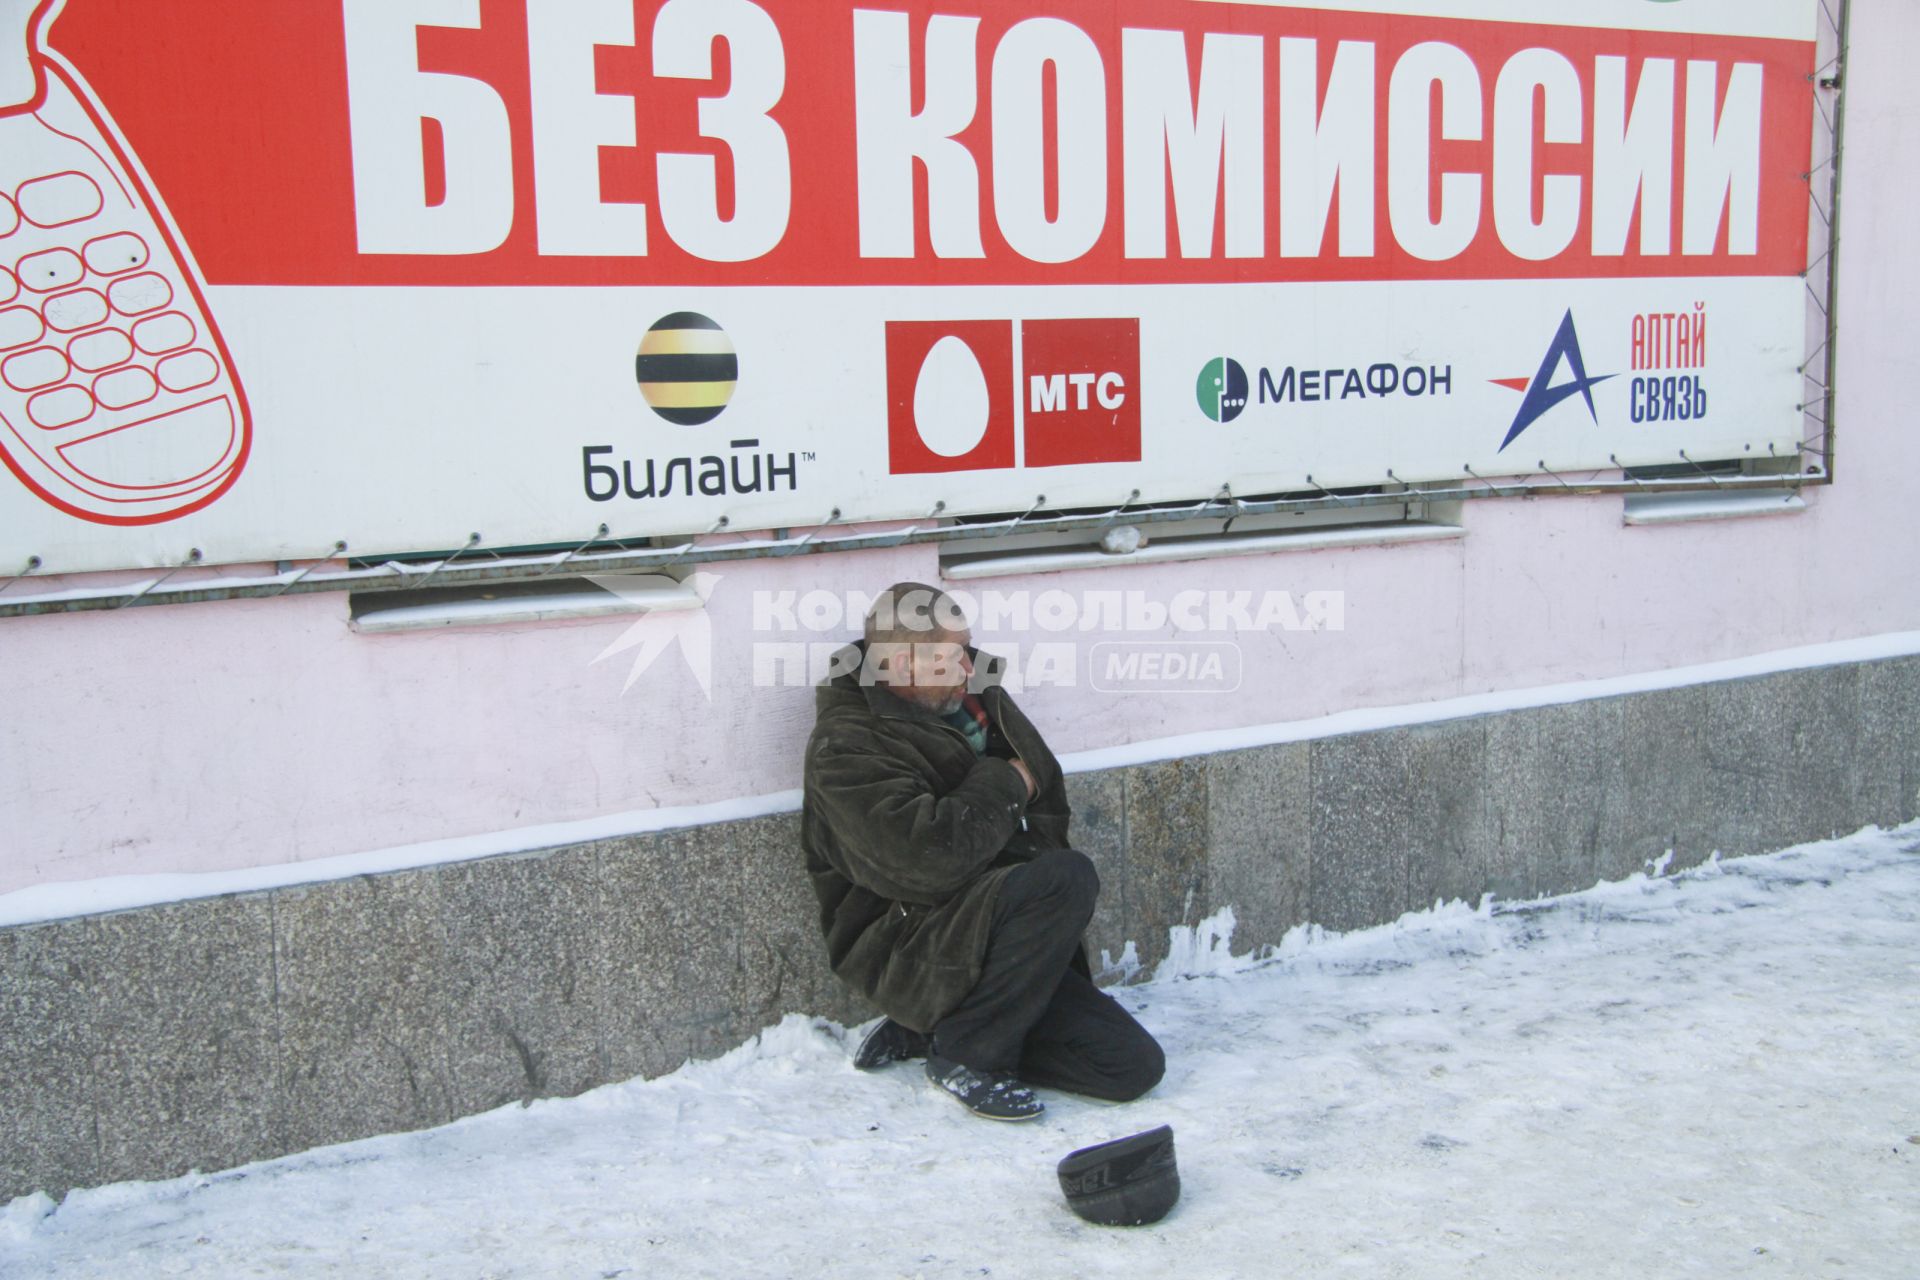 Бомж сидит зимой на снегу около рекламного плаката с надписью: `Без комиссии`.